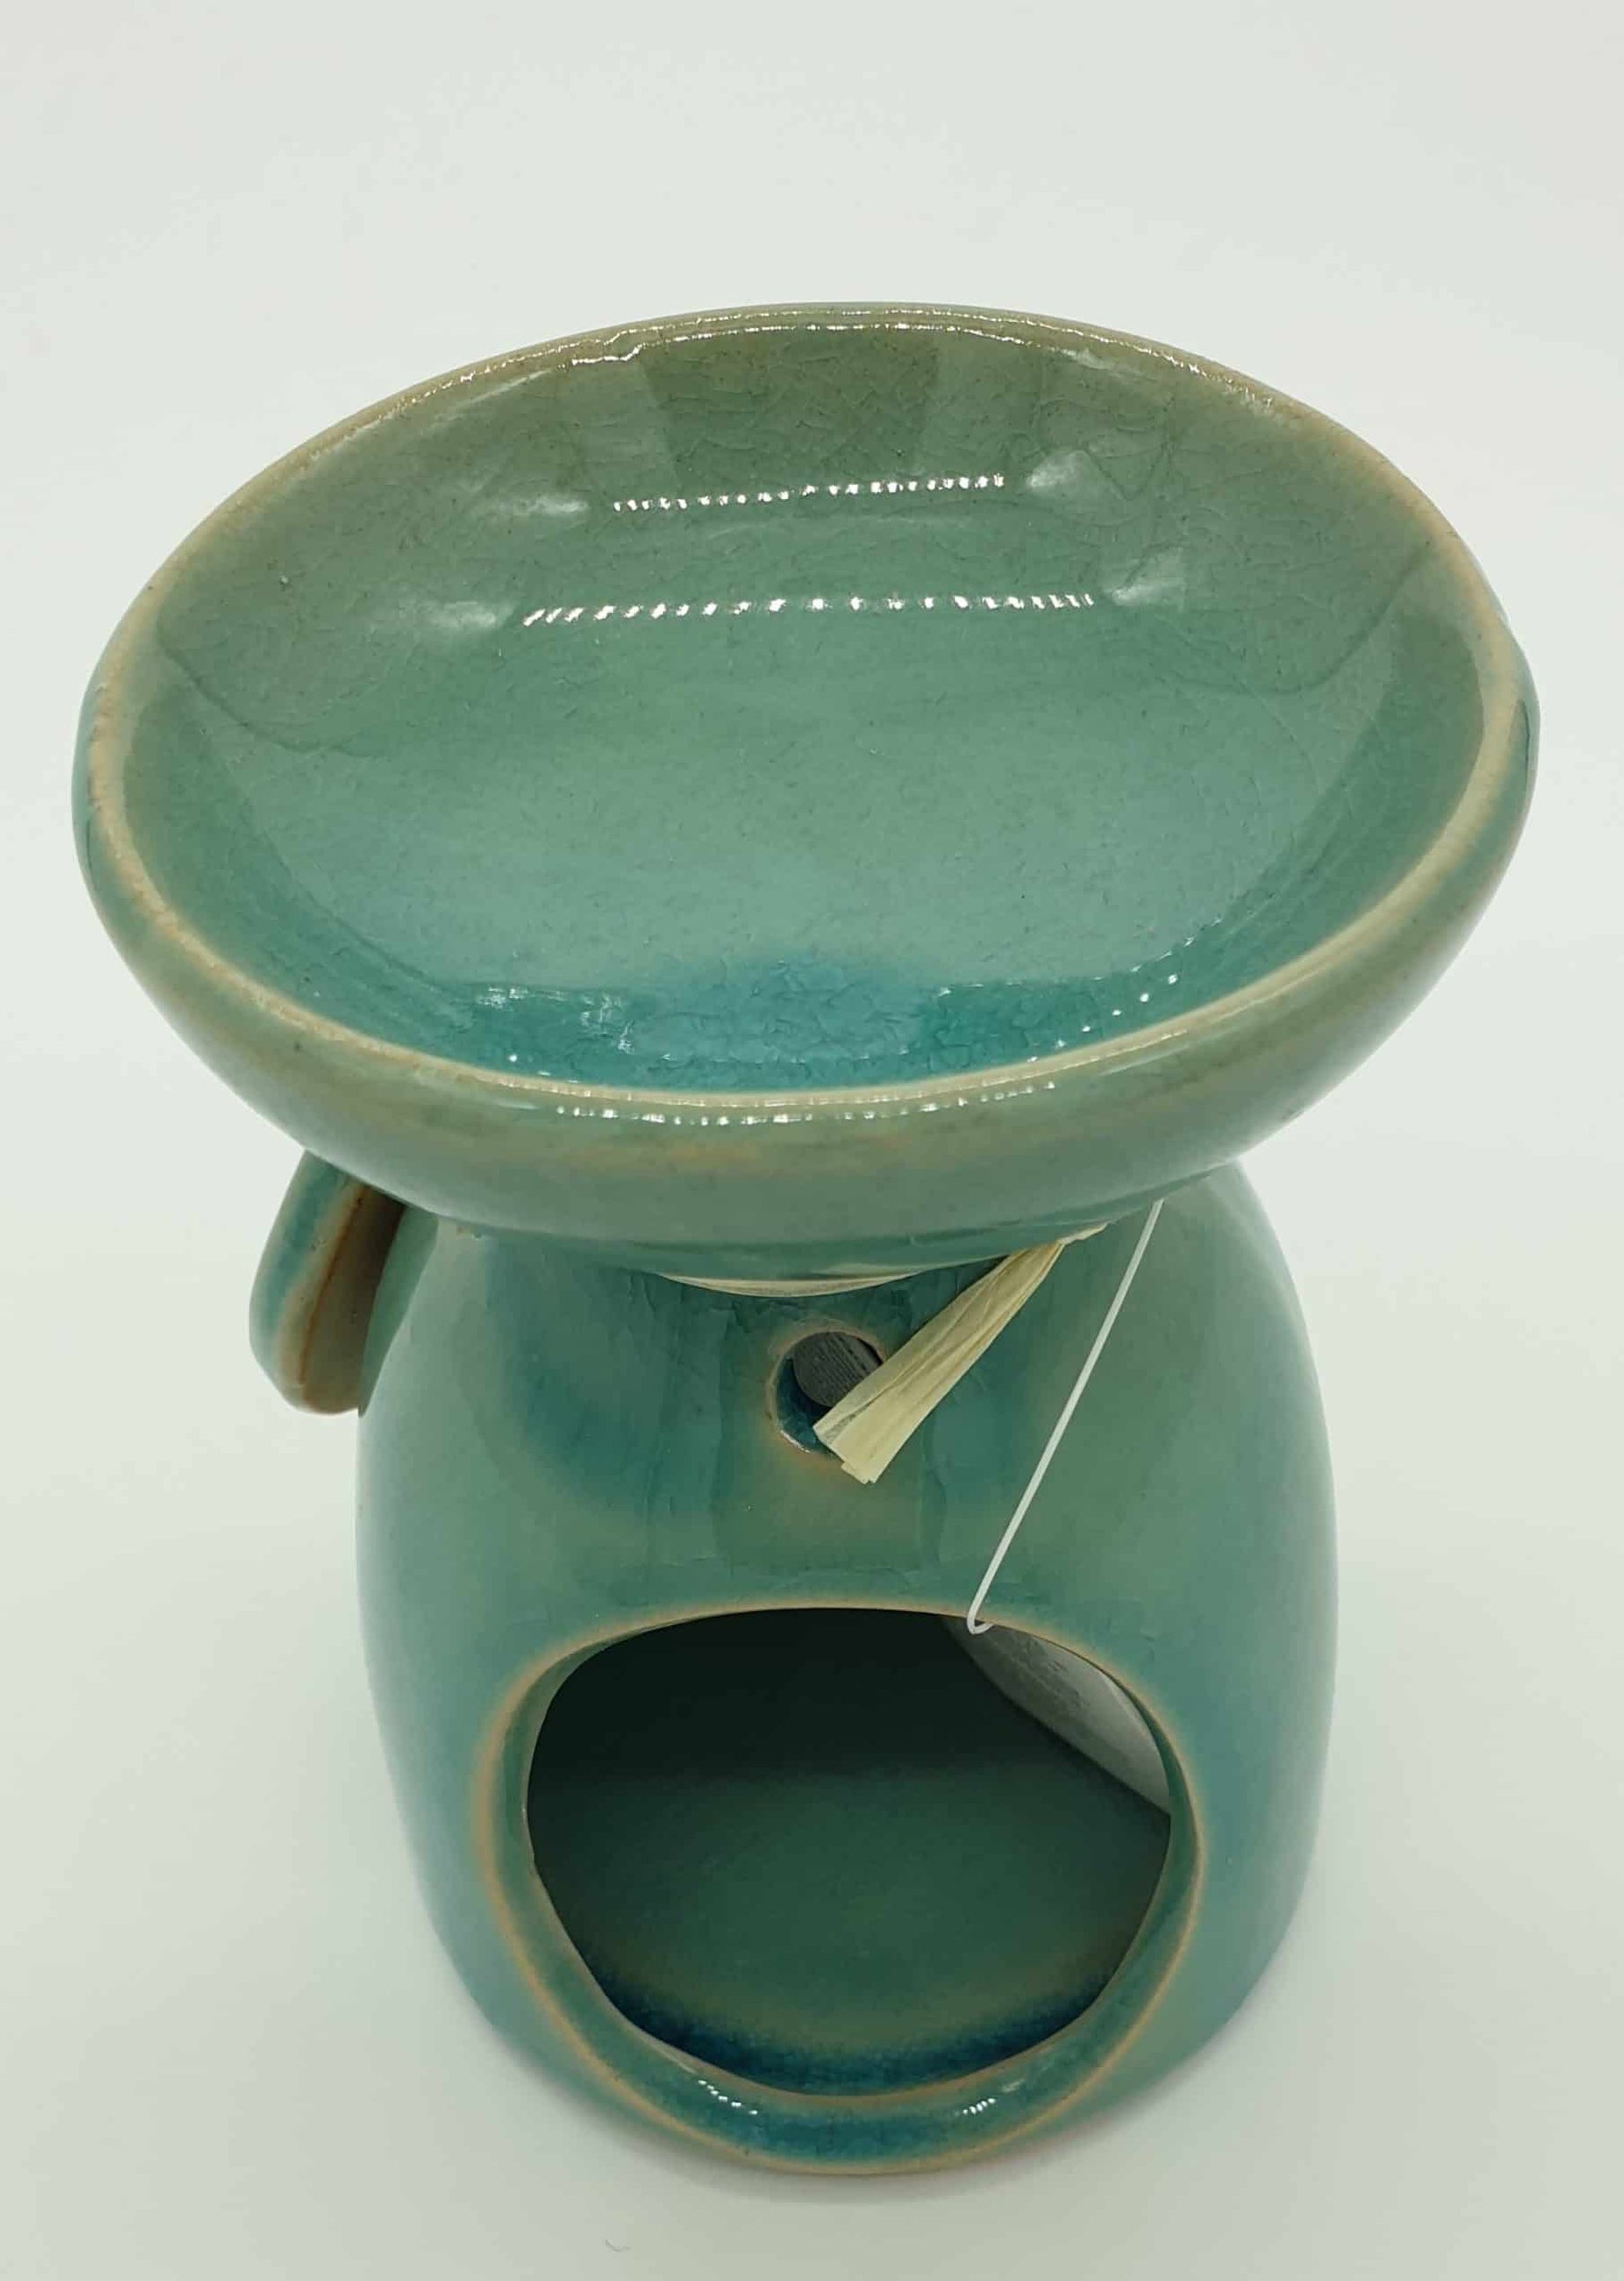 Eden Ceramic Oil Burner - Turquoise/Mint Green, Leaf Design